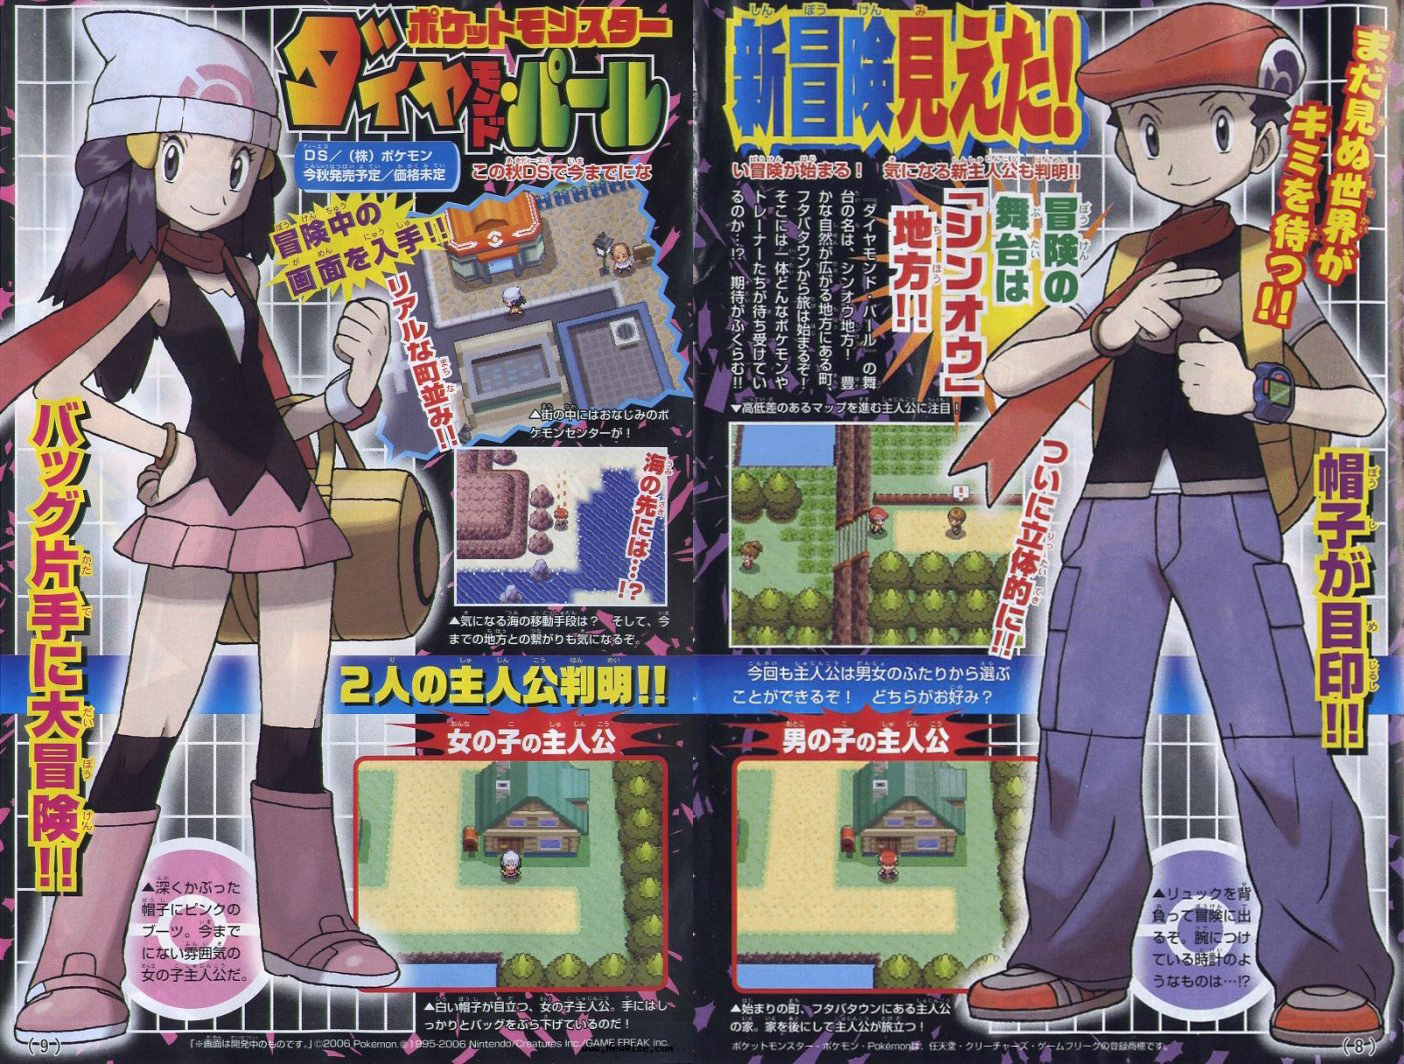 Masuda, Sugimori, e o problema da Game Freak com Pokémon lendários